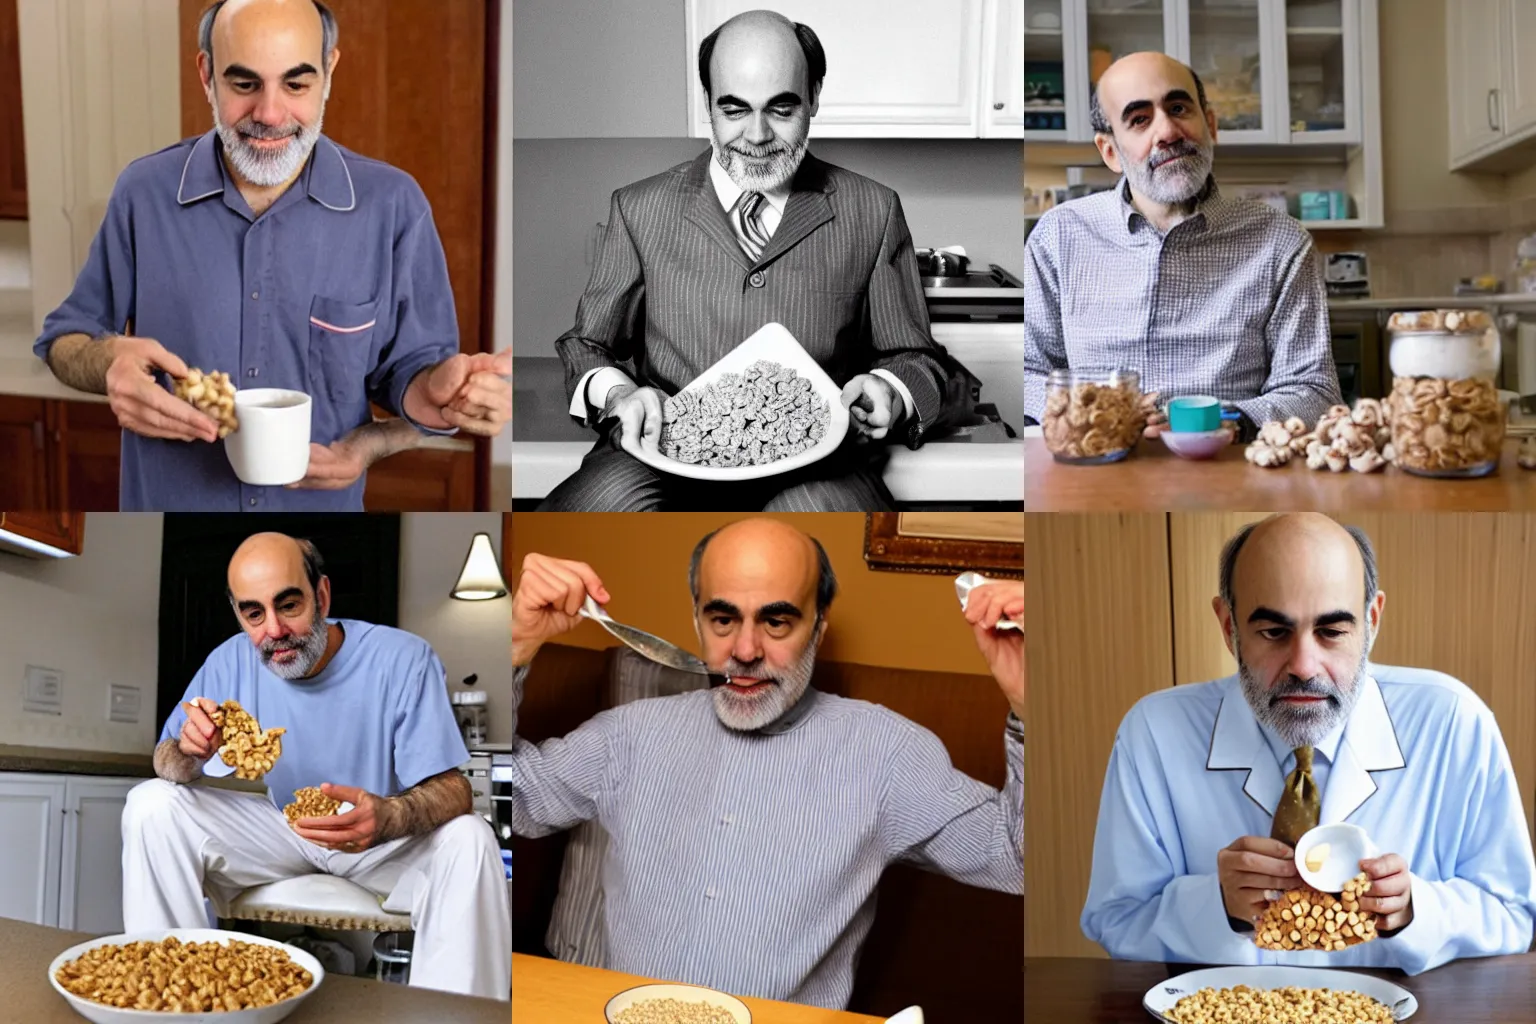 Prompt: Ben Bernanke eating cereal in his pajamas